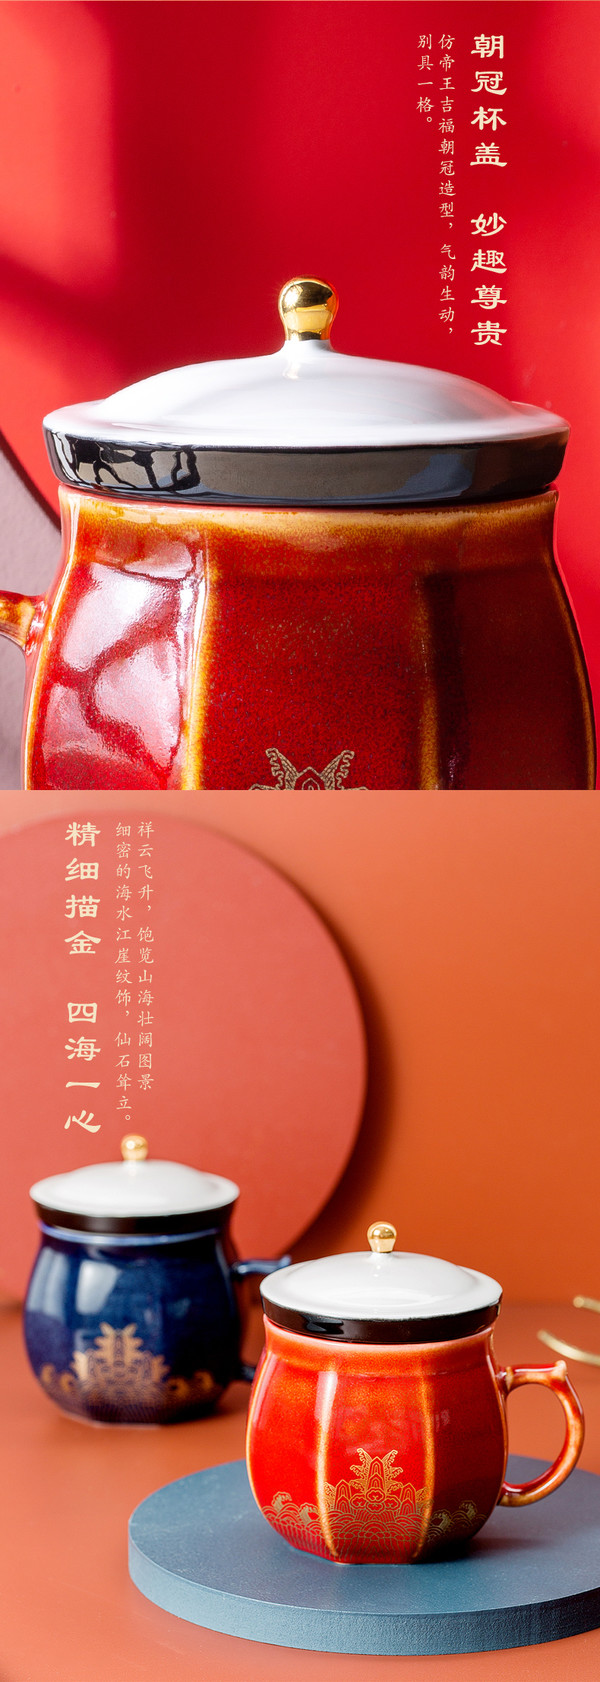 故宫文创 海水江崖彩釉陶瓷杯 12x10cm 创意国风水杯